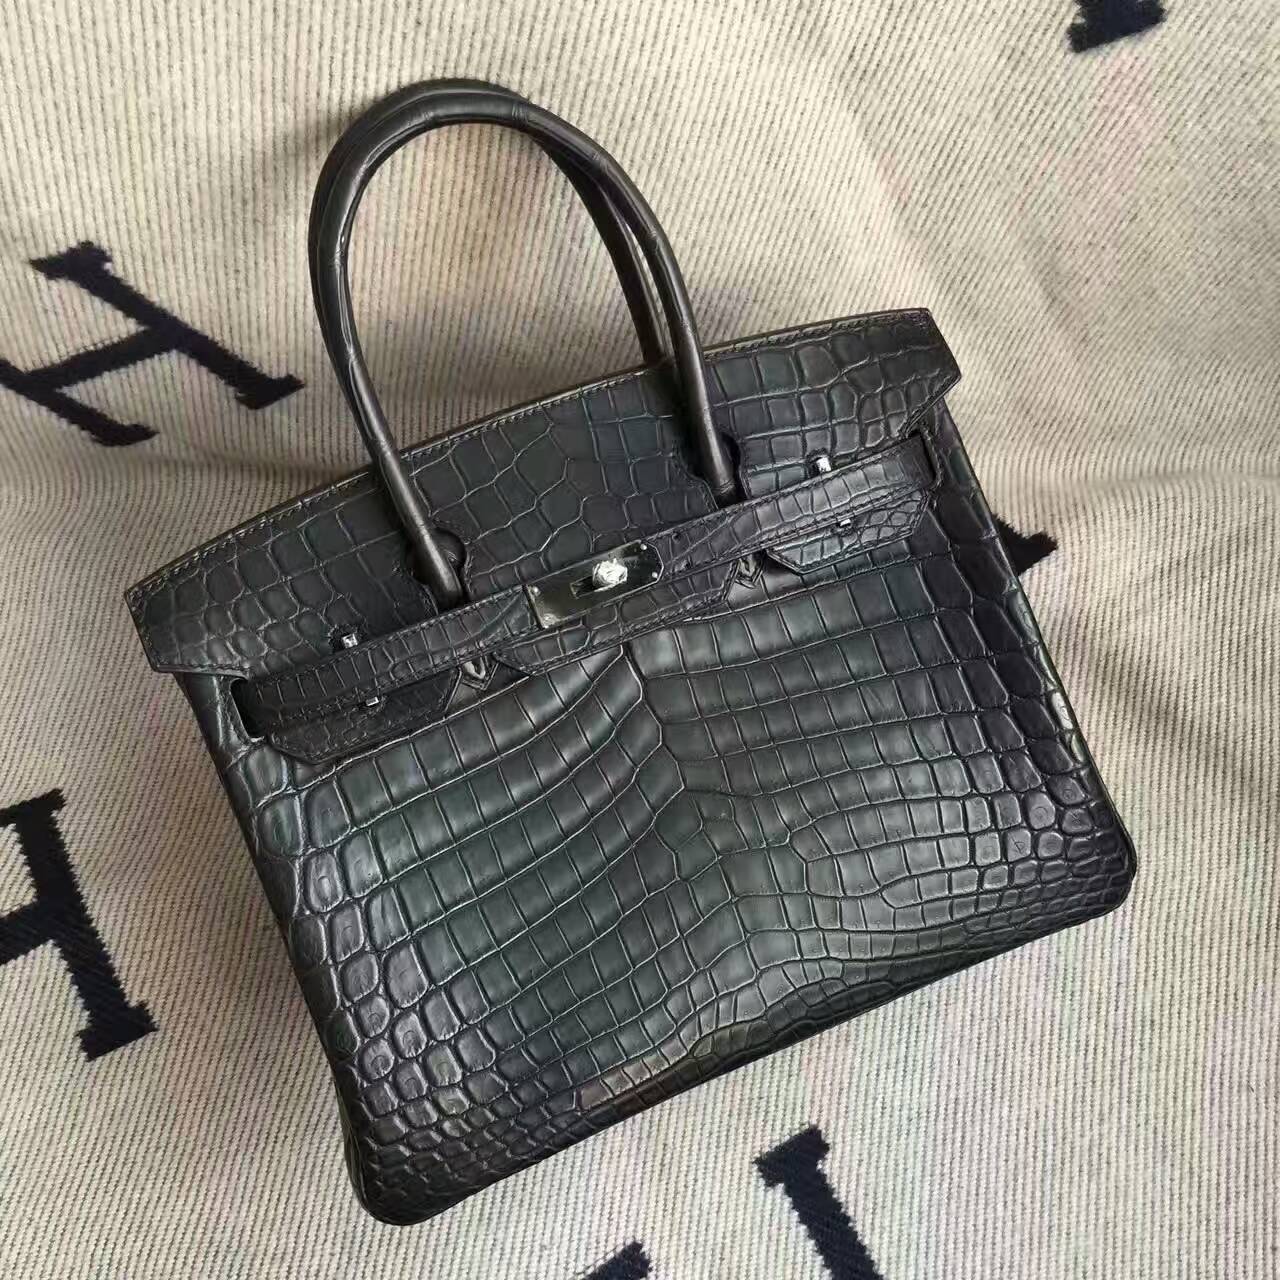 Sale Hermes Crocodile Matt Leather Birkin30cm Handbag in CK89 Black